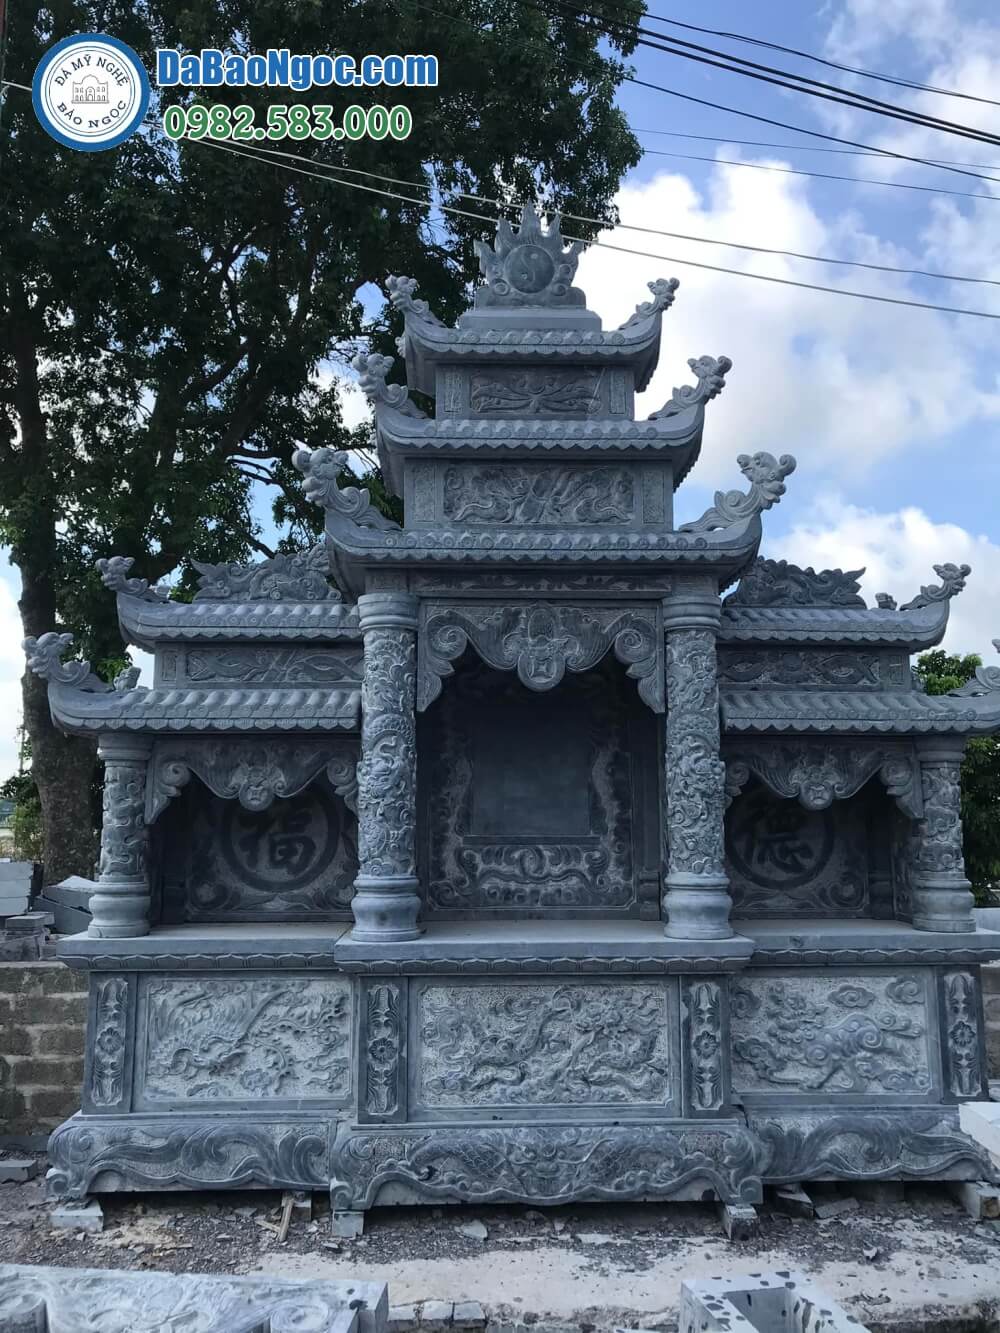 Bán và xây dựng, làm Lăng thờ đá ở Quảng Nam rẻ đẹp